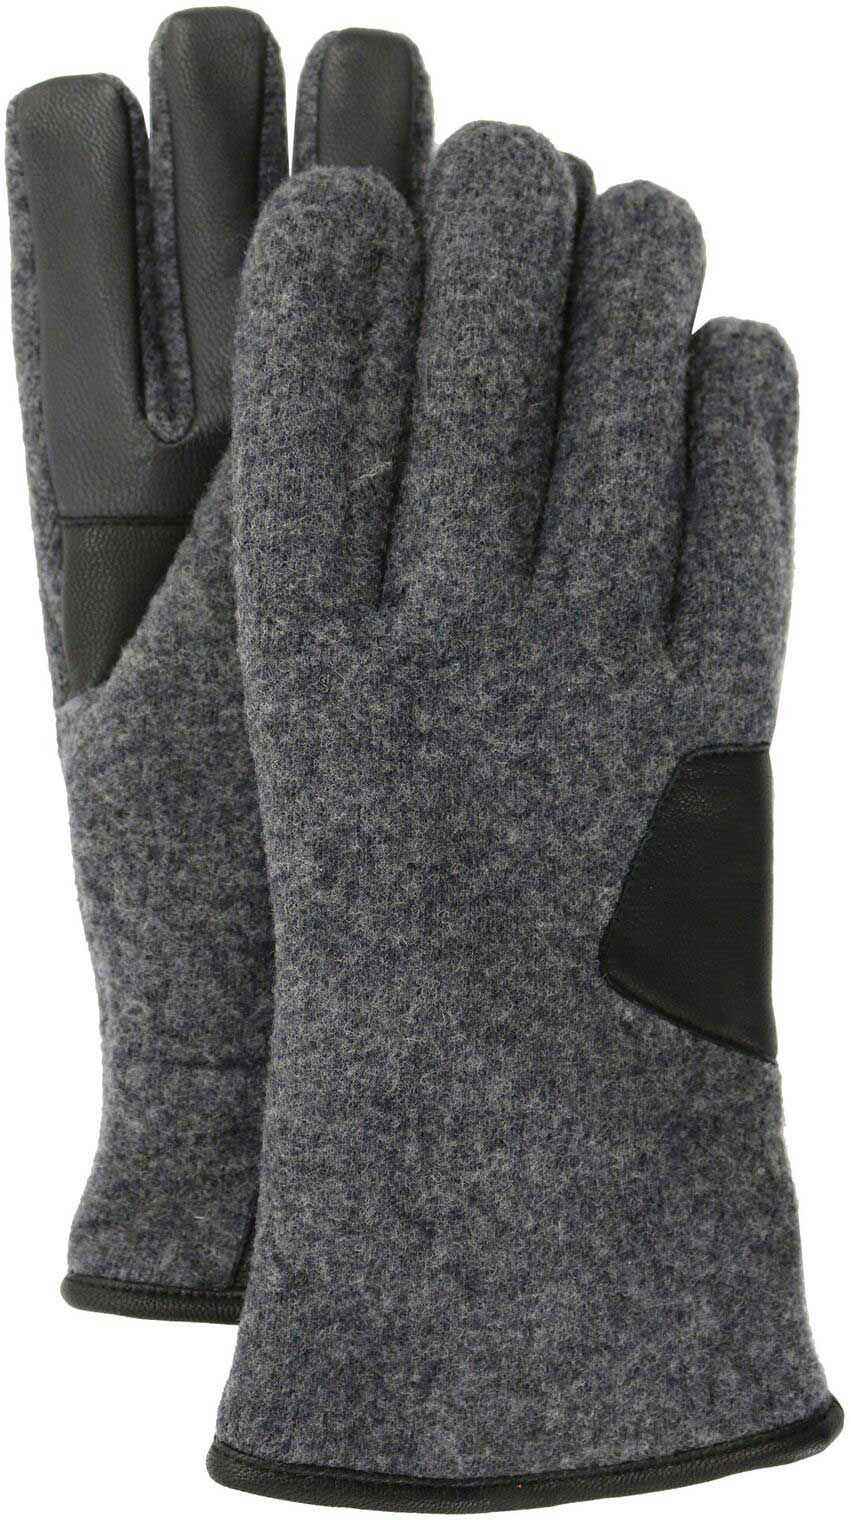 ugg leather gloves